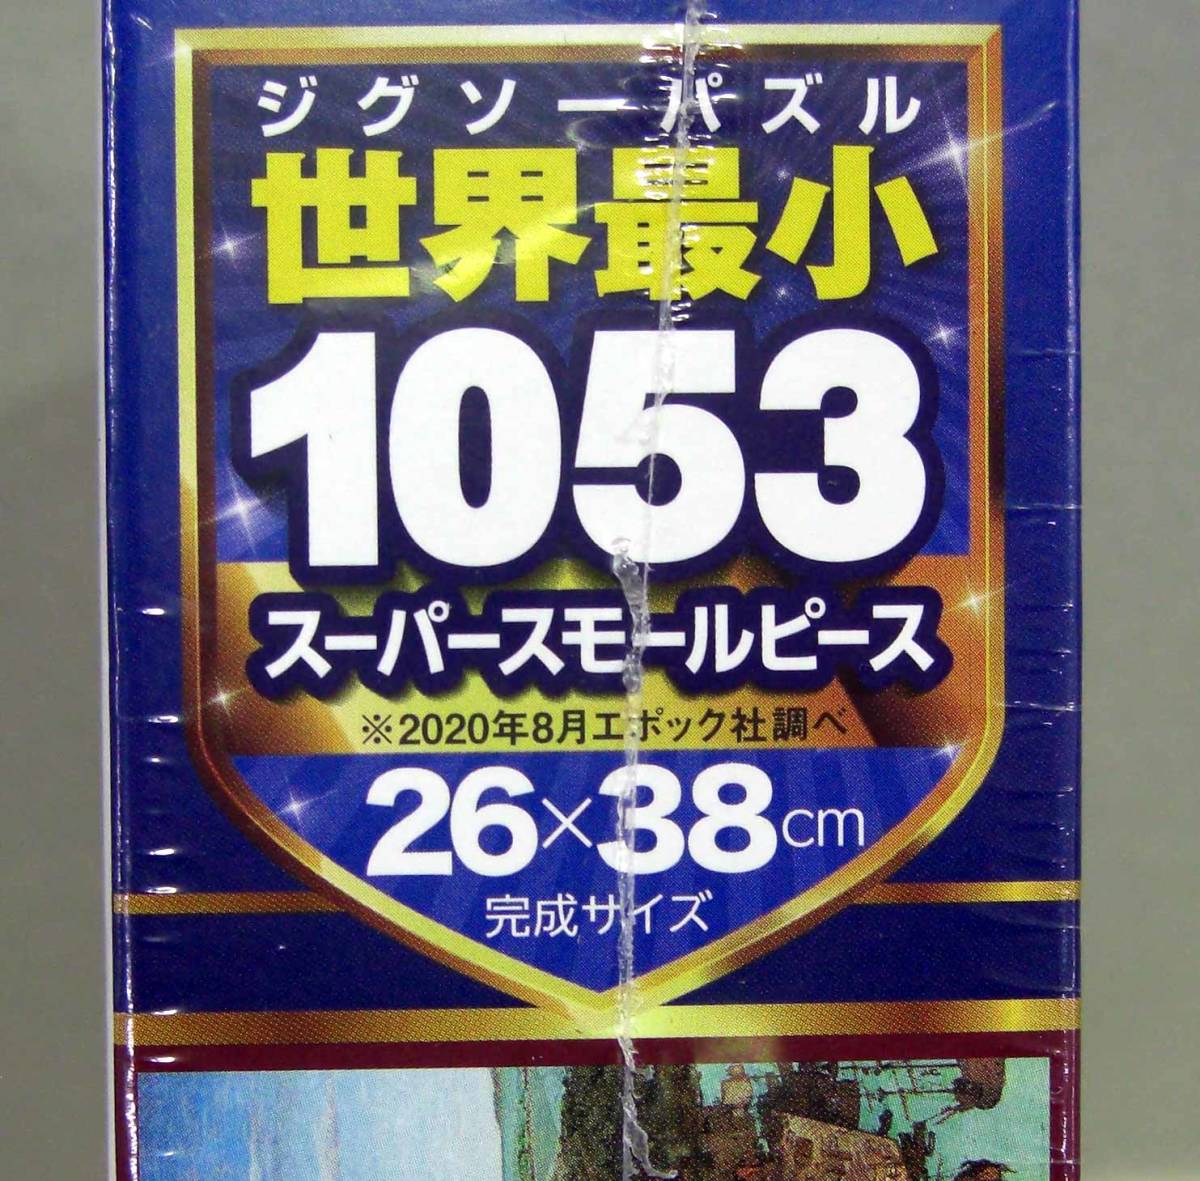 ☆人気作品 ピーテル・ブリューゲル バベルの塔　世界最小1053スーパースモールピース_画像2